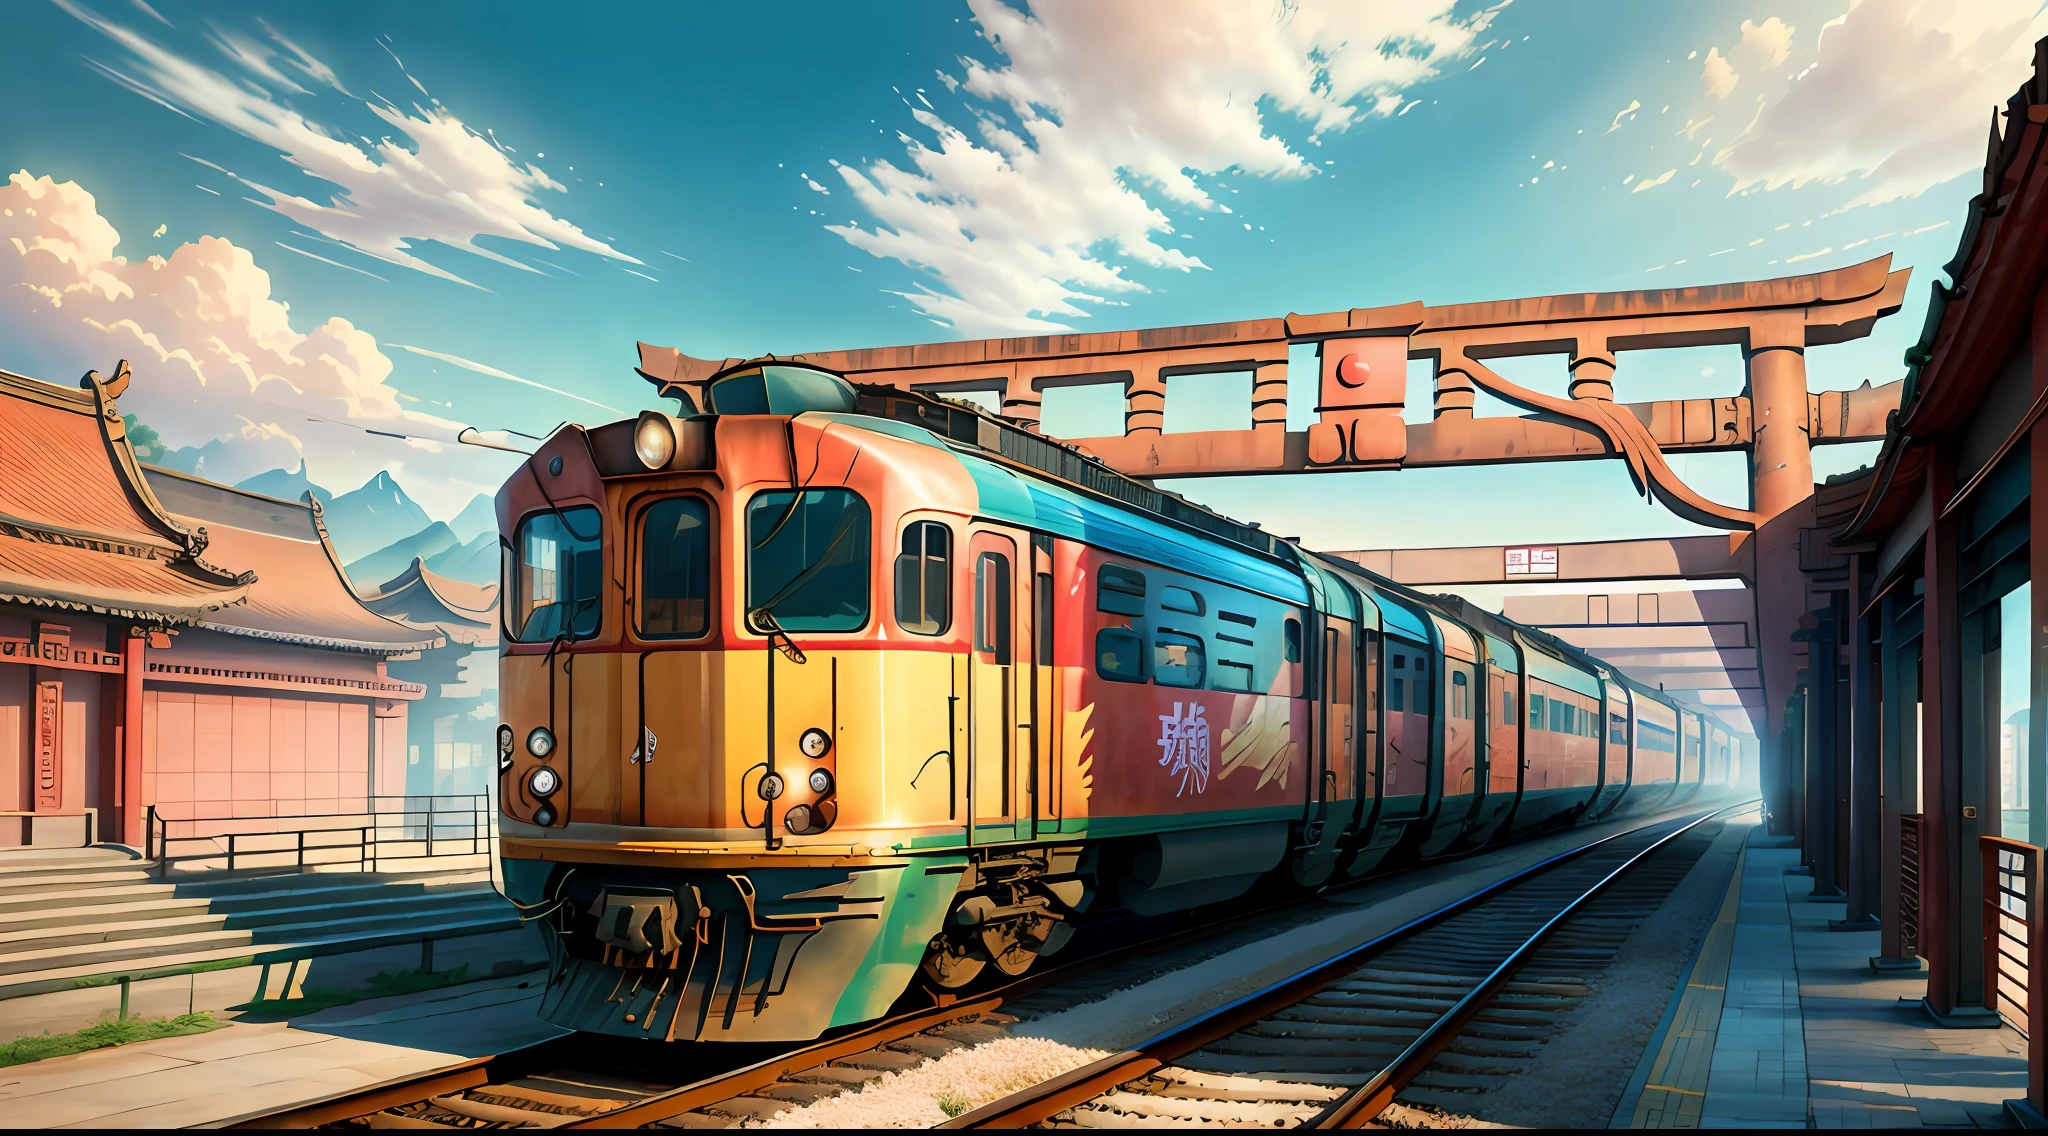 Les trains en Chine dans les années 80, torii, net et clair, très réaliste (poids: 1.4), HDR, 4k, créer une impression de panorama.